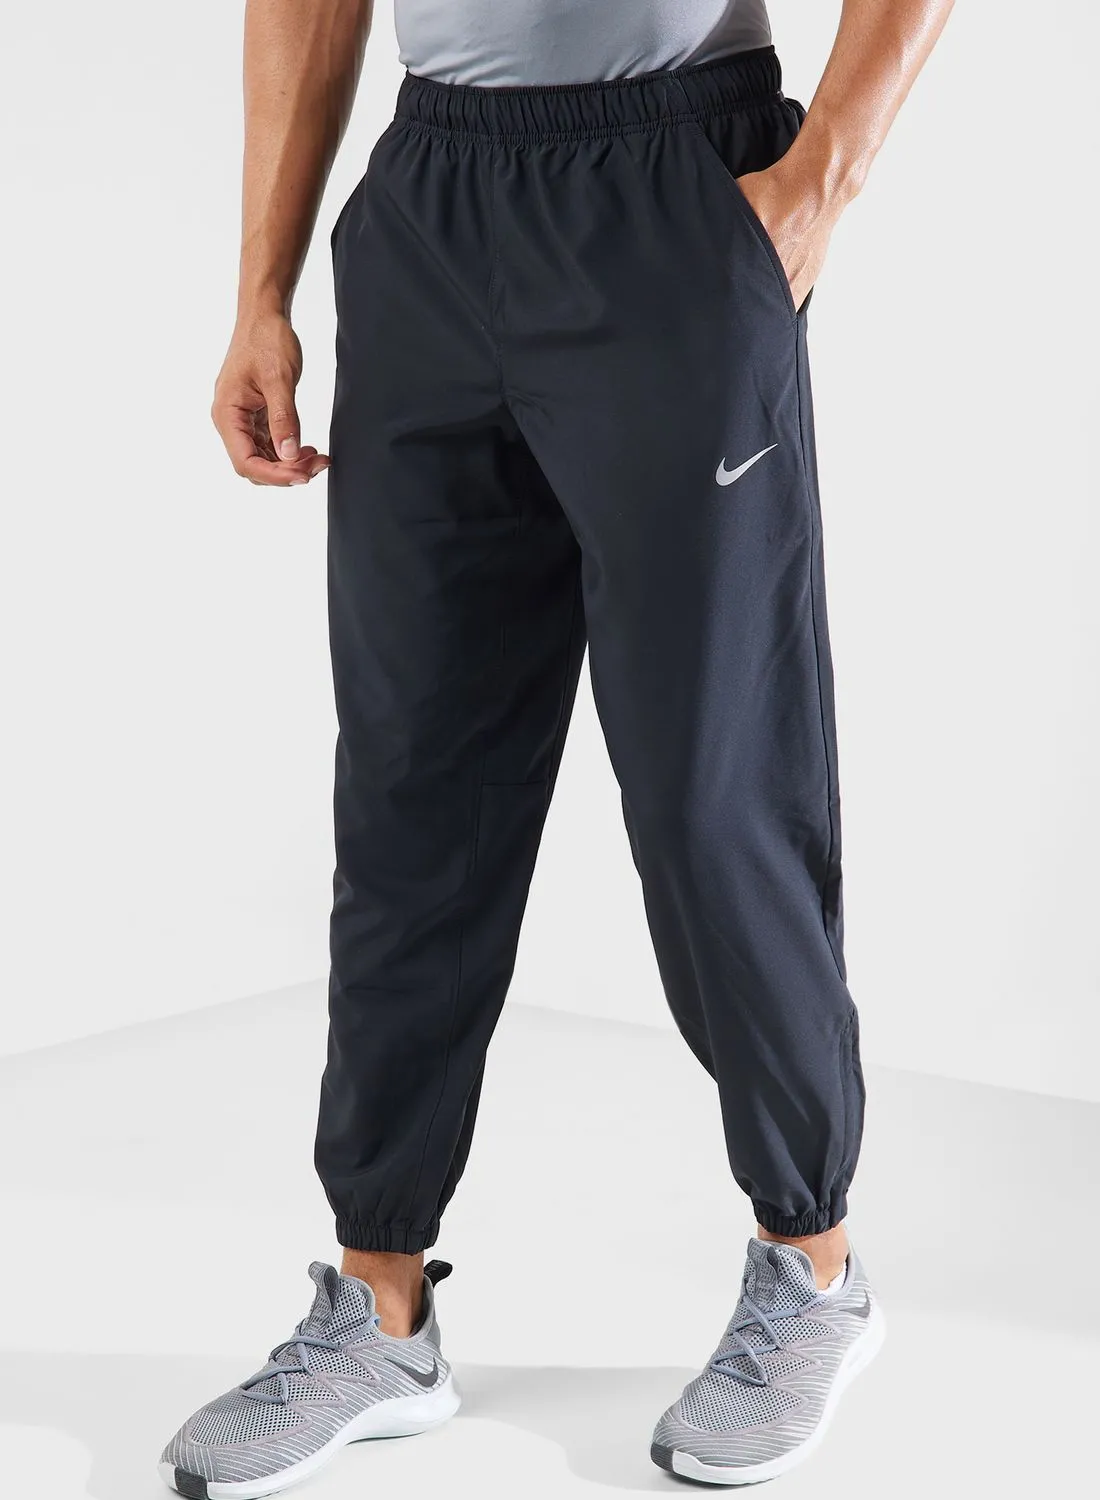 Nike Dri-Fit Taper Form Pant